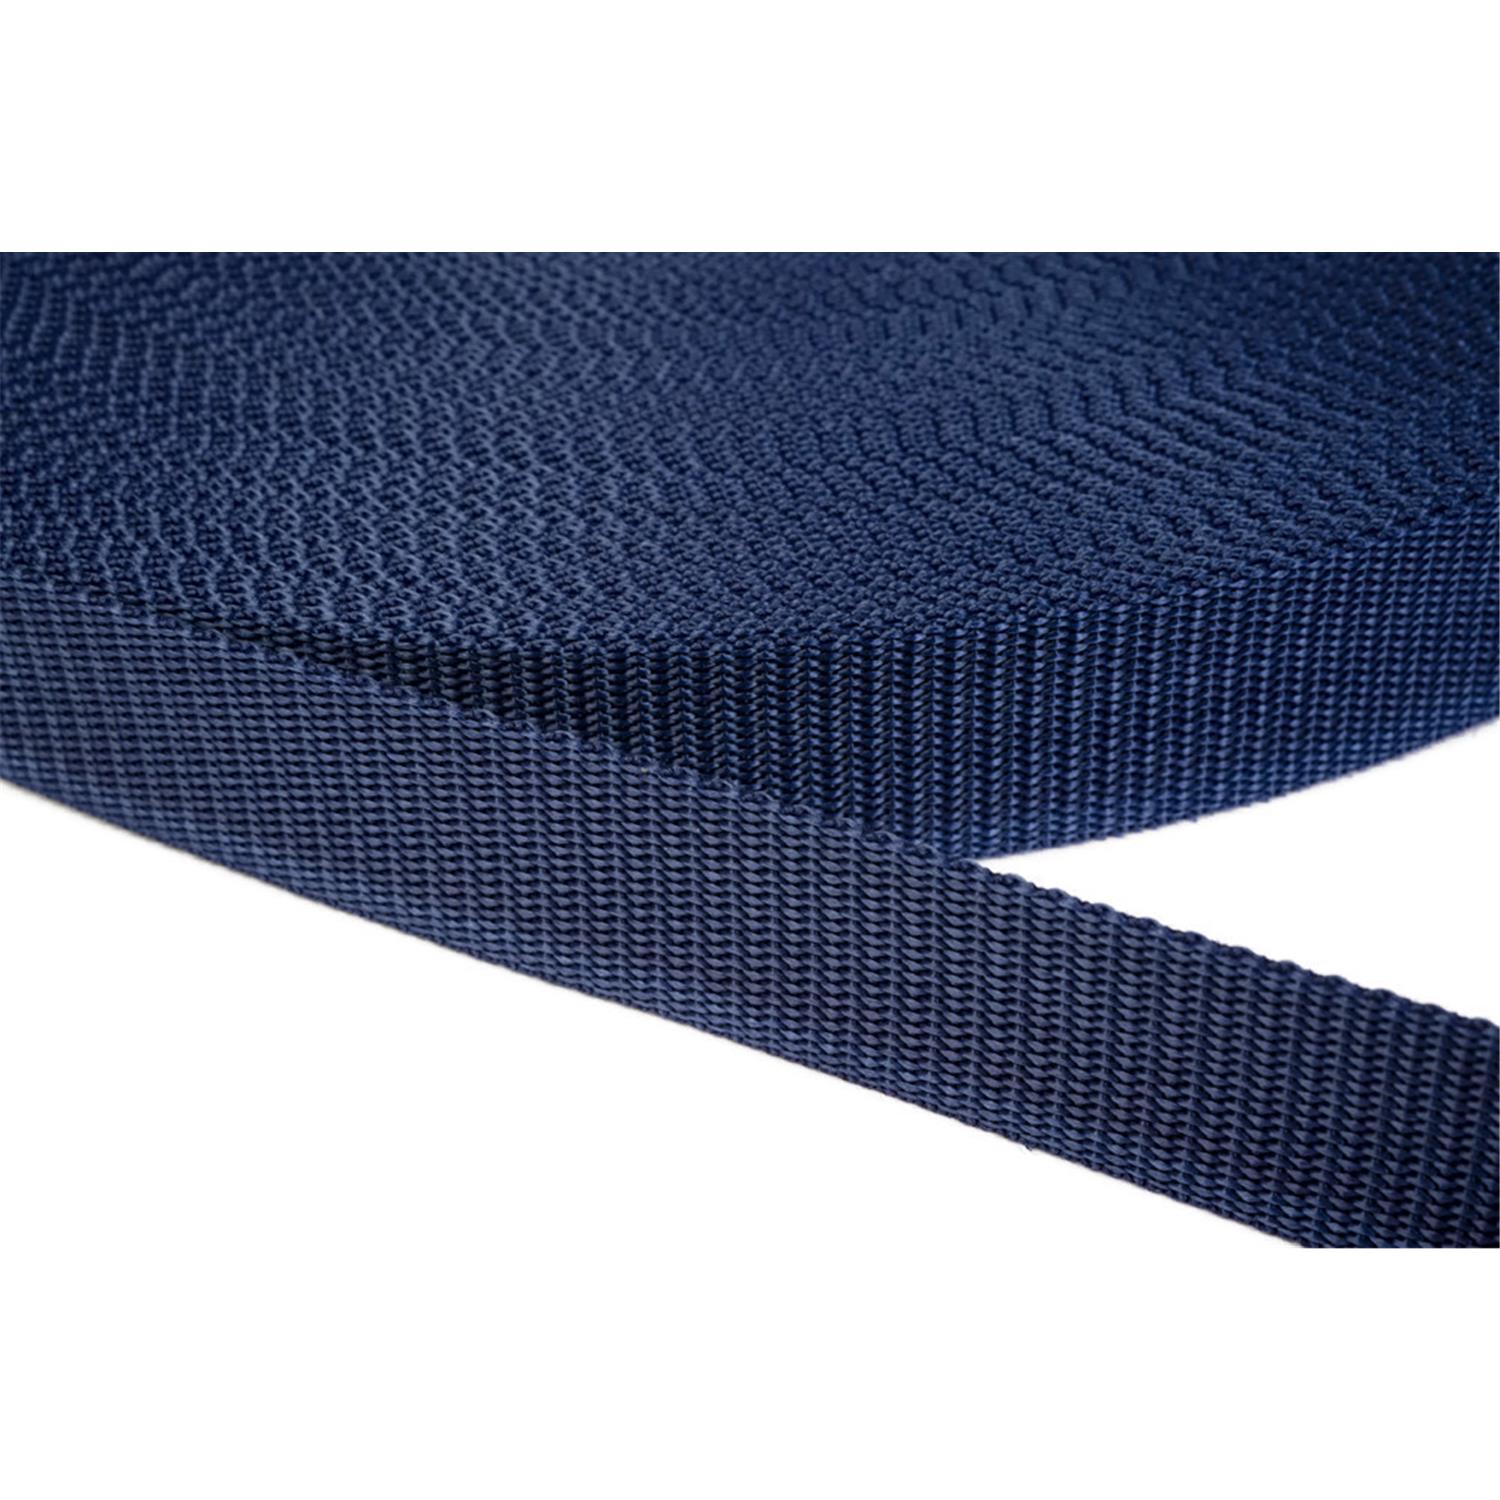 Gurtband 10mm breit aus Polypropylen in 41 Farben 27 - dunkelblau 12 Meter